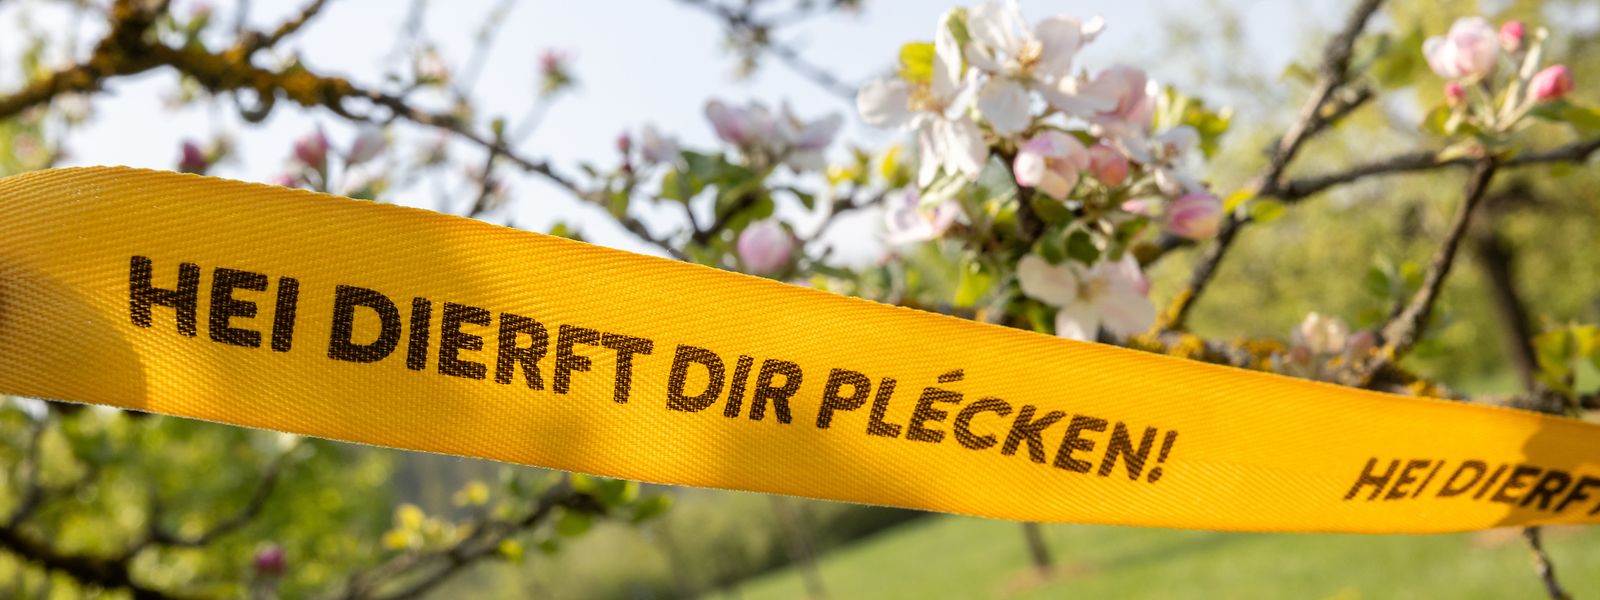 Les rubans jaunes pour les arbres fruitiers publics ou privés peuvent être commandés gratuitement via le site www.antigaspi.lu.